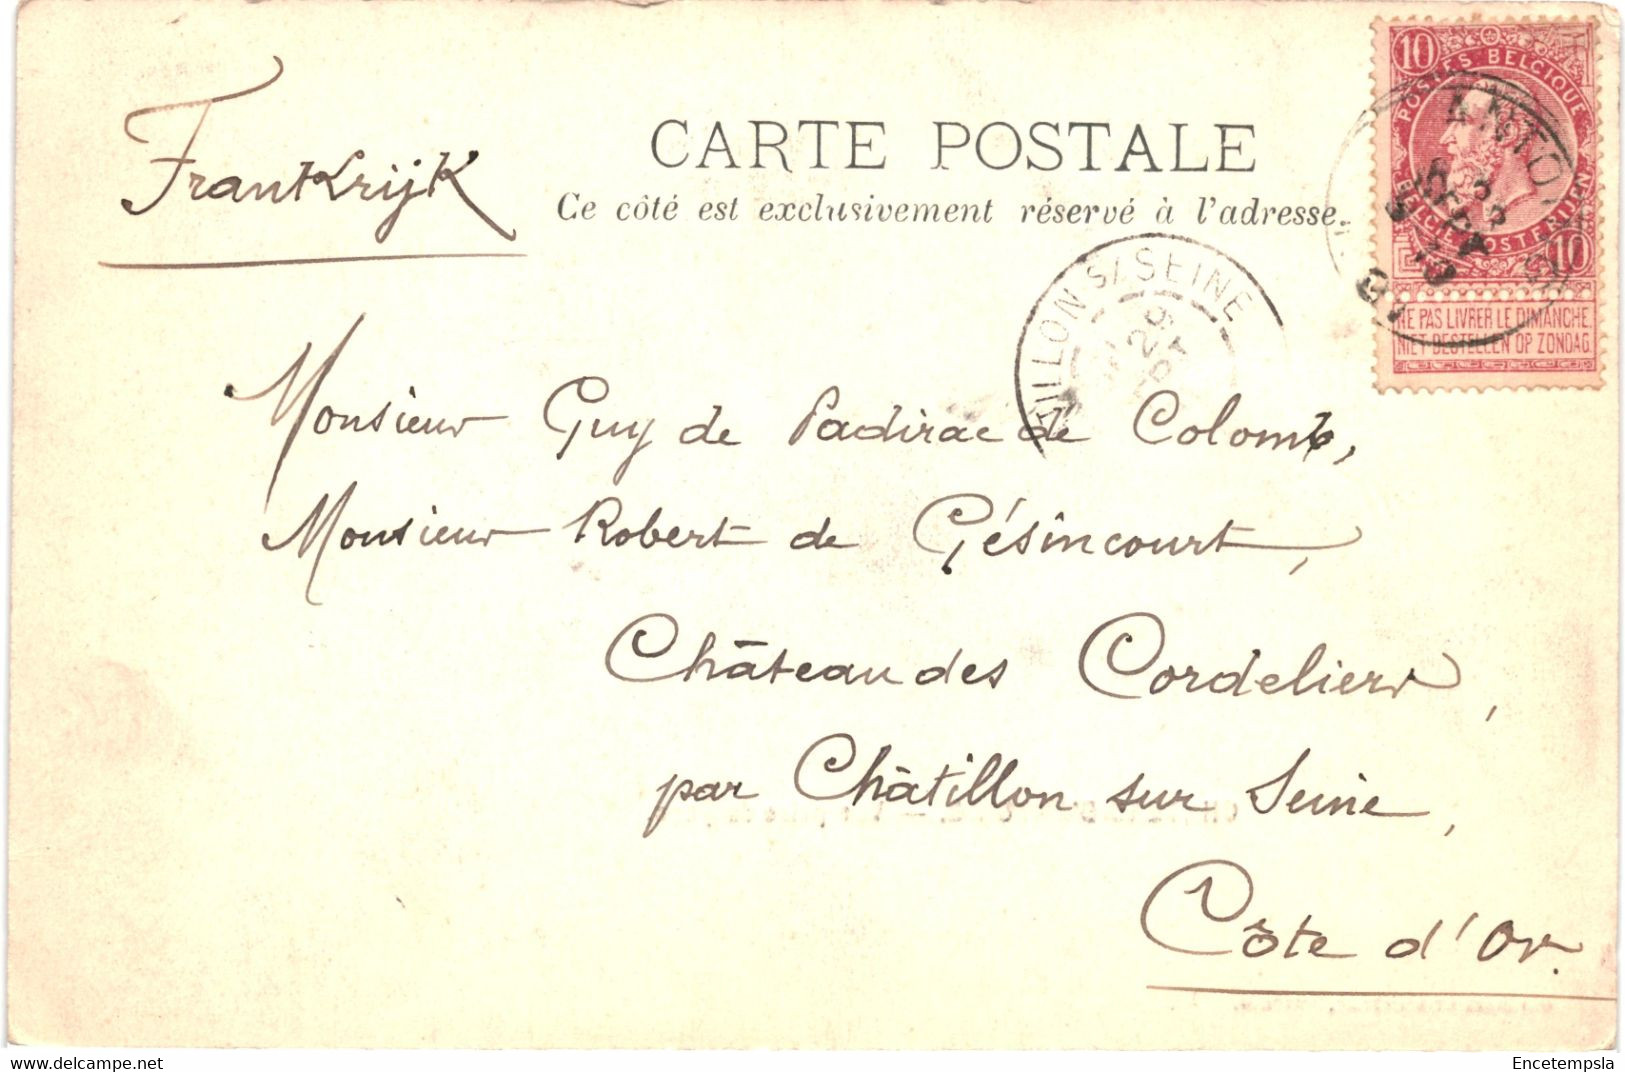 CPA Carte Postale Belgique Antoing  Château Vue Prise Du Parc  Début 1900  VM61846 - Antoing